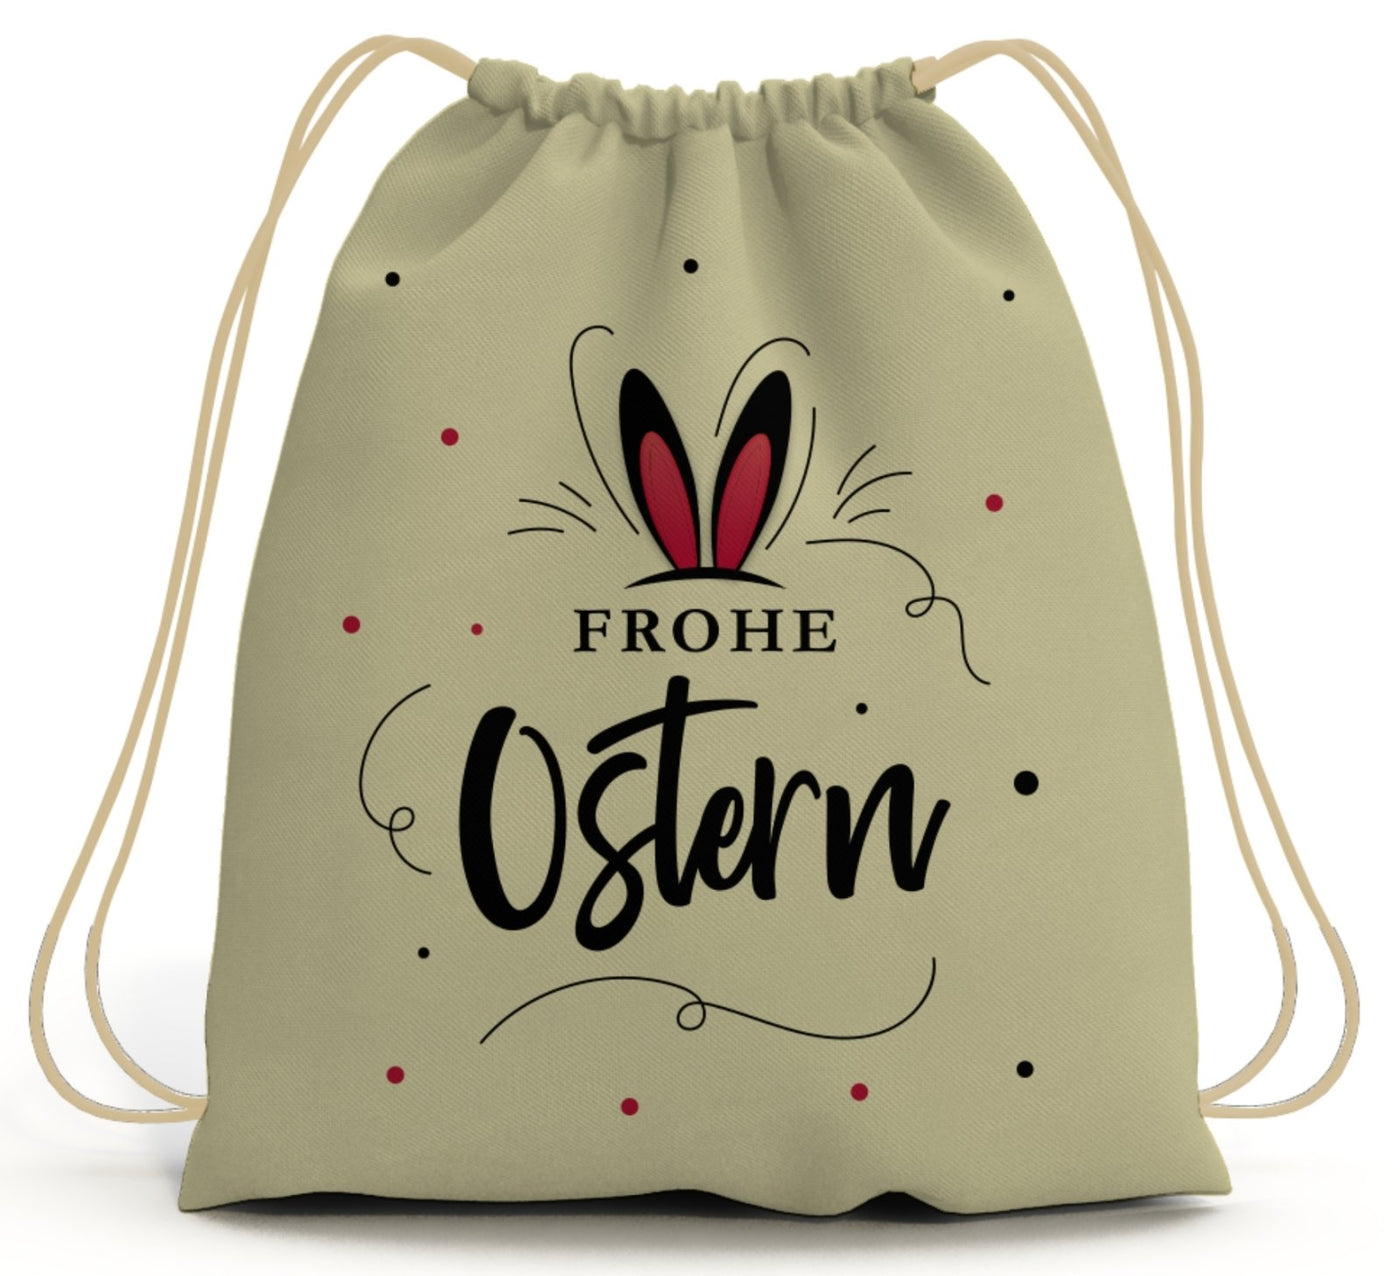 Bild: Turnbeutel - Frohe Ostern (Hasenohren) Geschenkidee